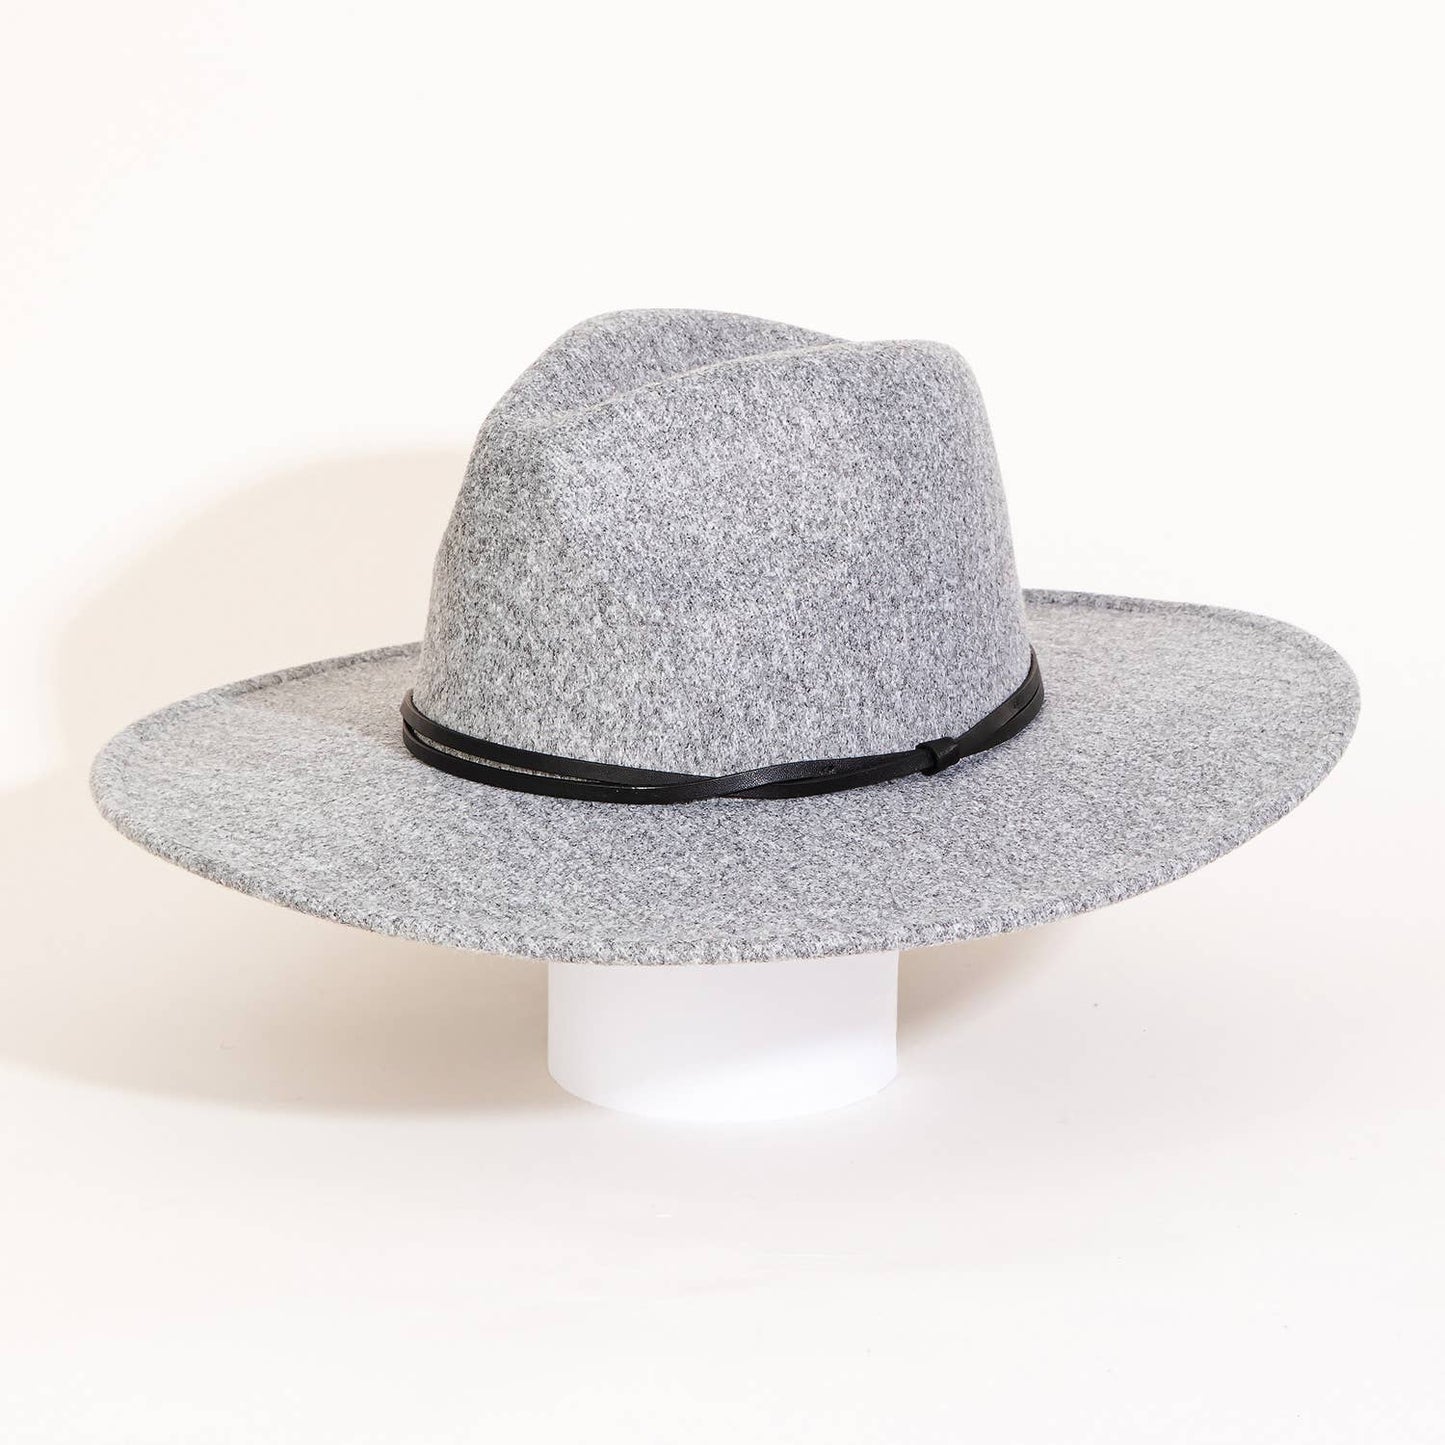 Thin Strap Flat Brim Fedora Fashion Hat